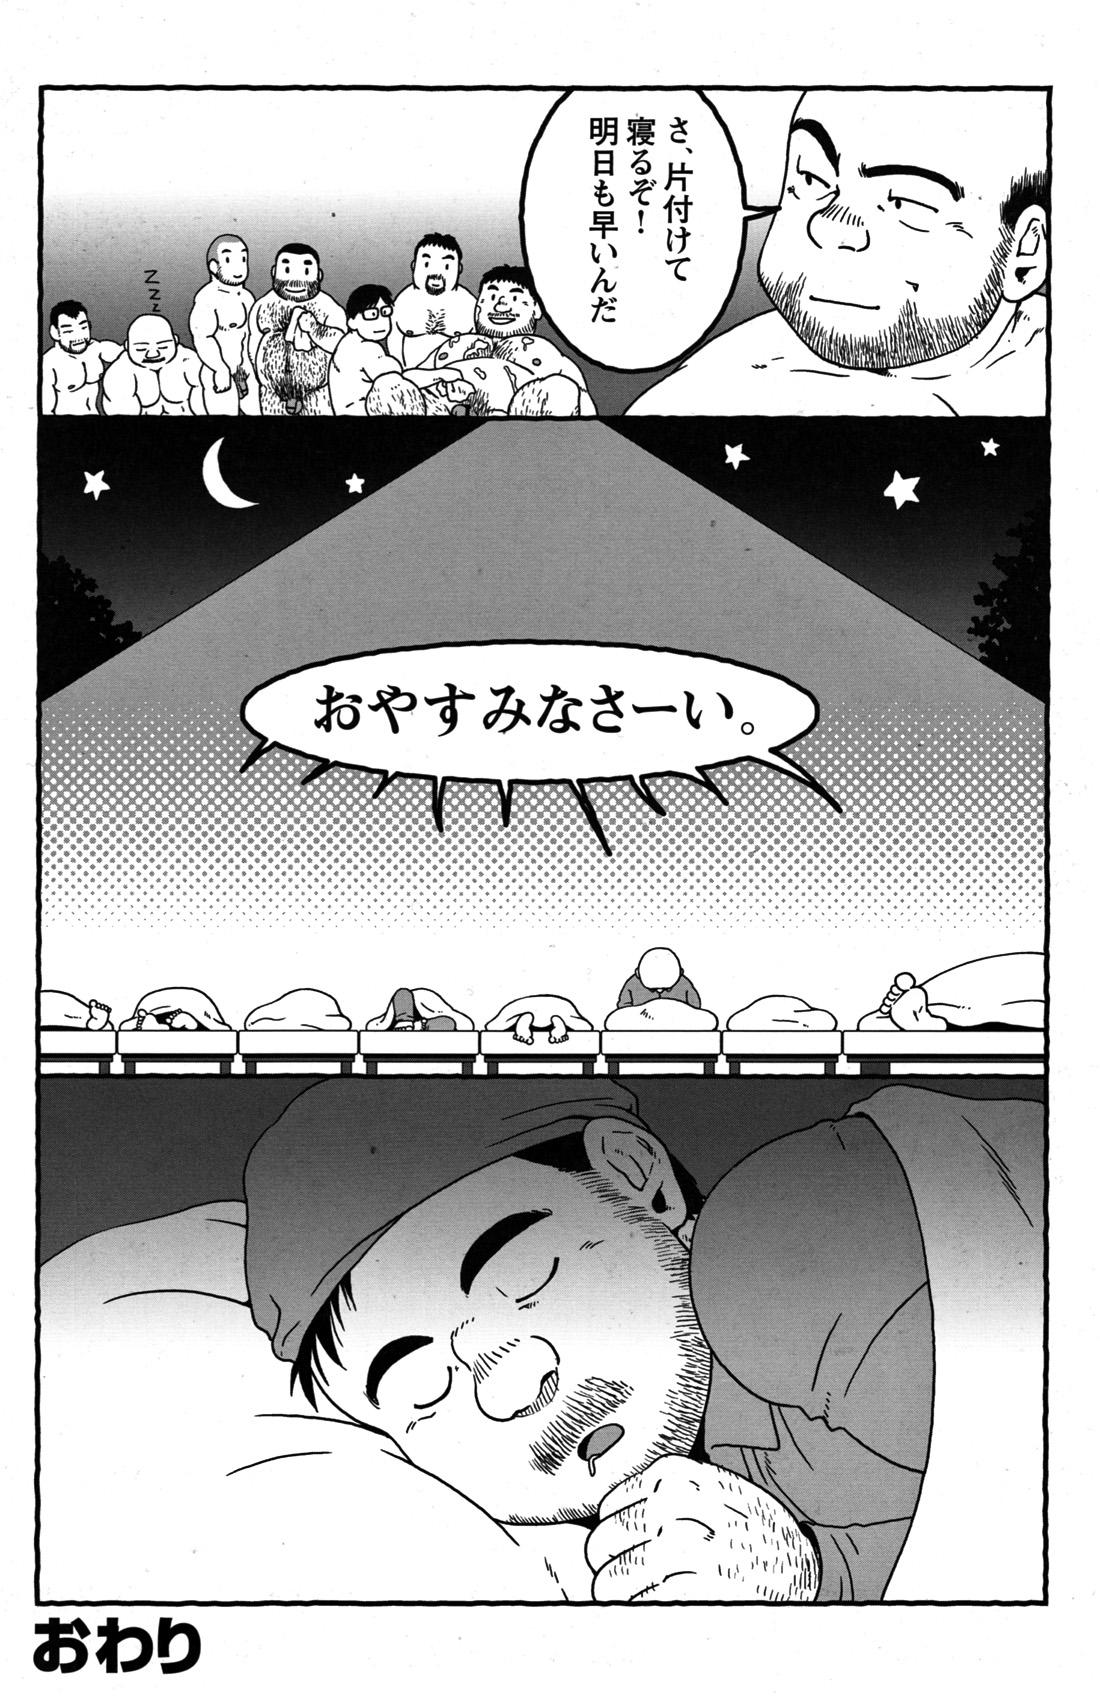 Comic G-men Gaho No.09 Gacchibi Zeme 144